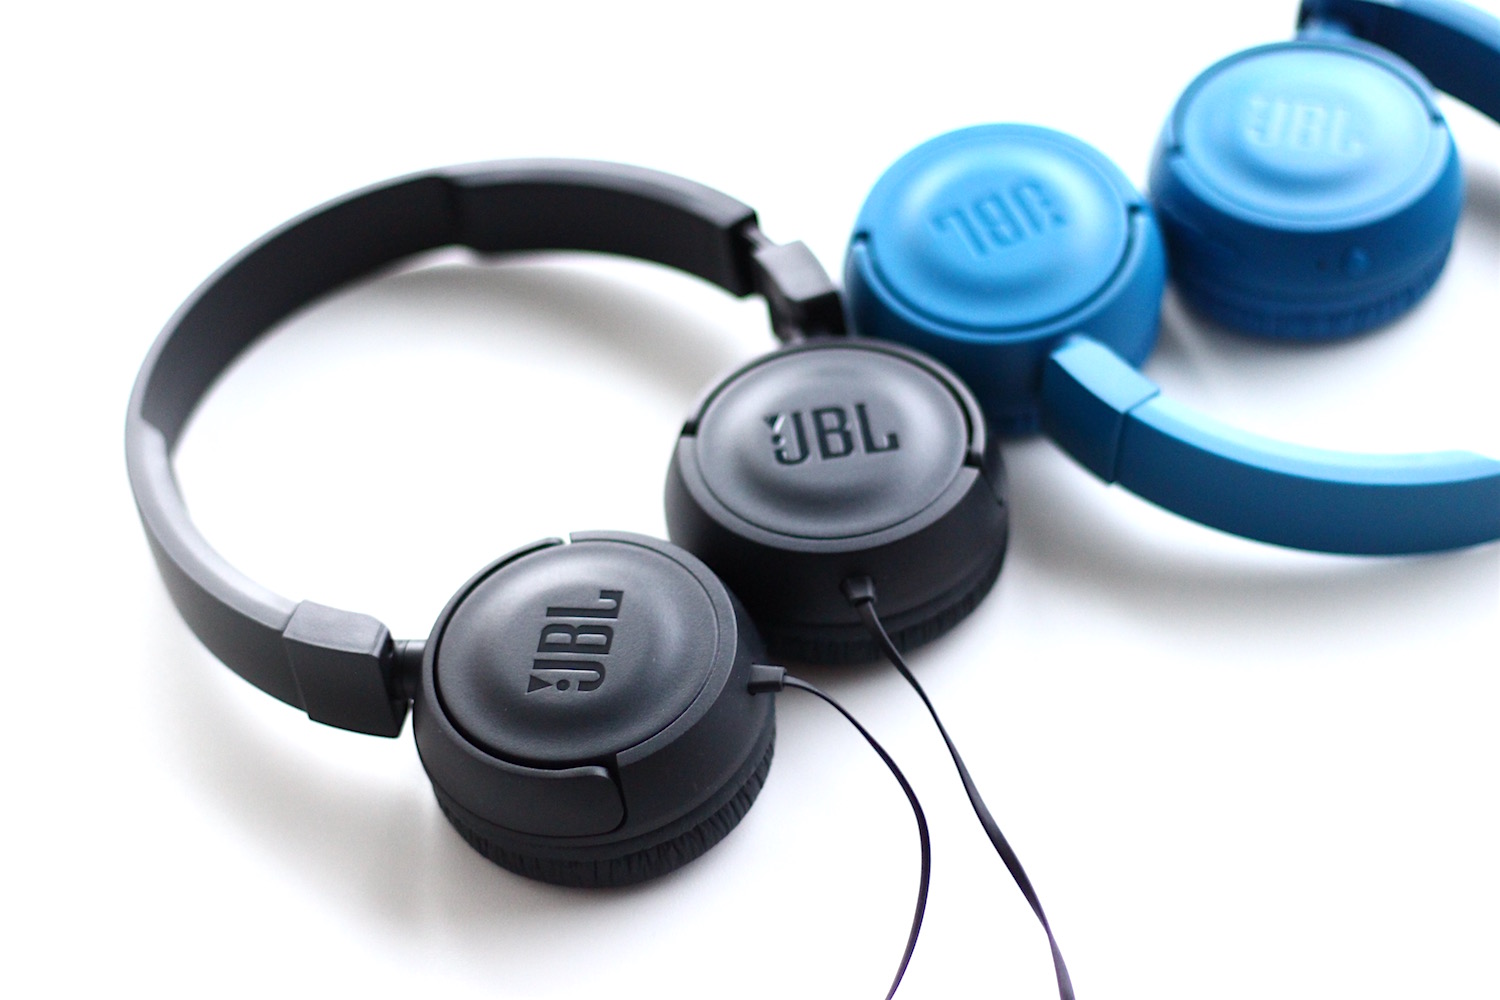 Tai nghe JBL T450 (Black) đem tới trải nghiệm âm thanh tuyệt vời mà không có được ở dòng tai nghe nào